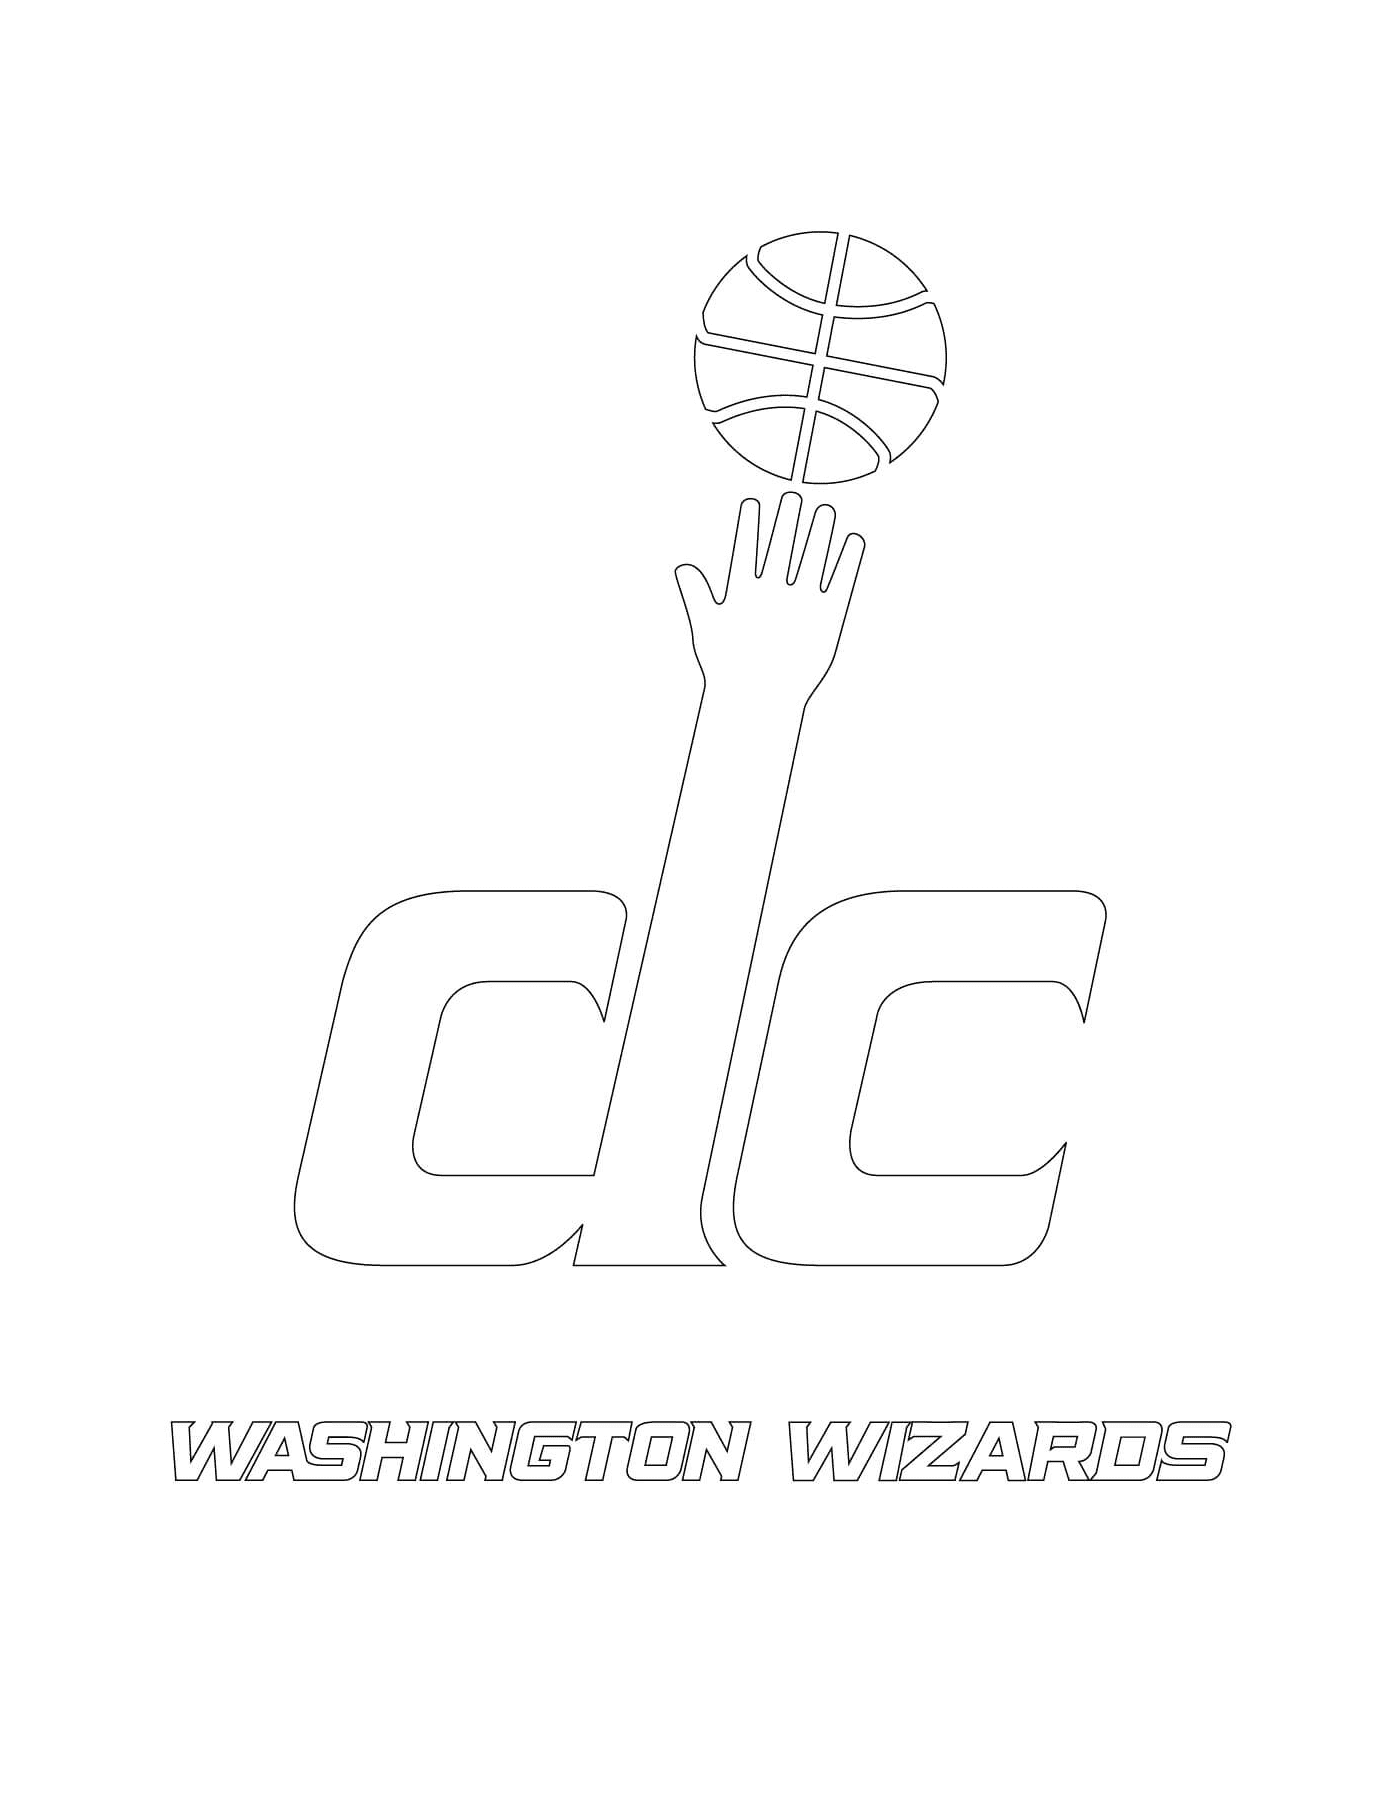  El logo de los Washington Wizards de la NBA 